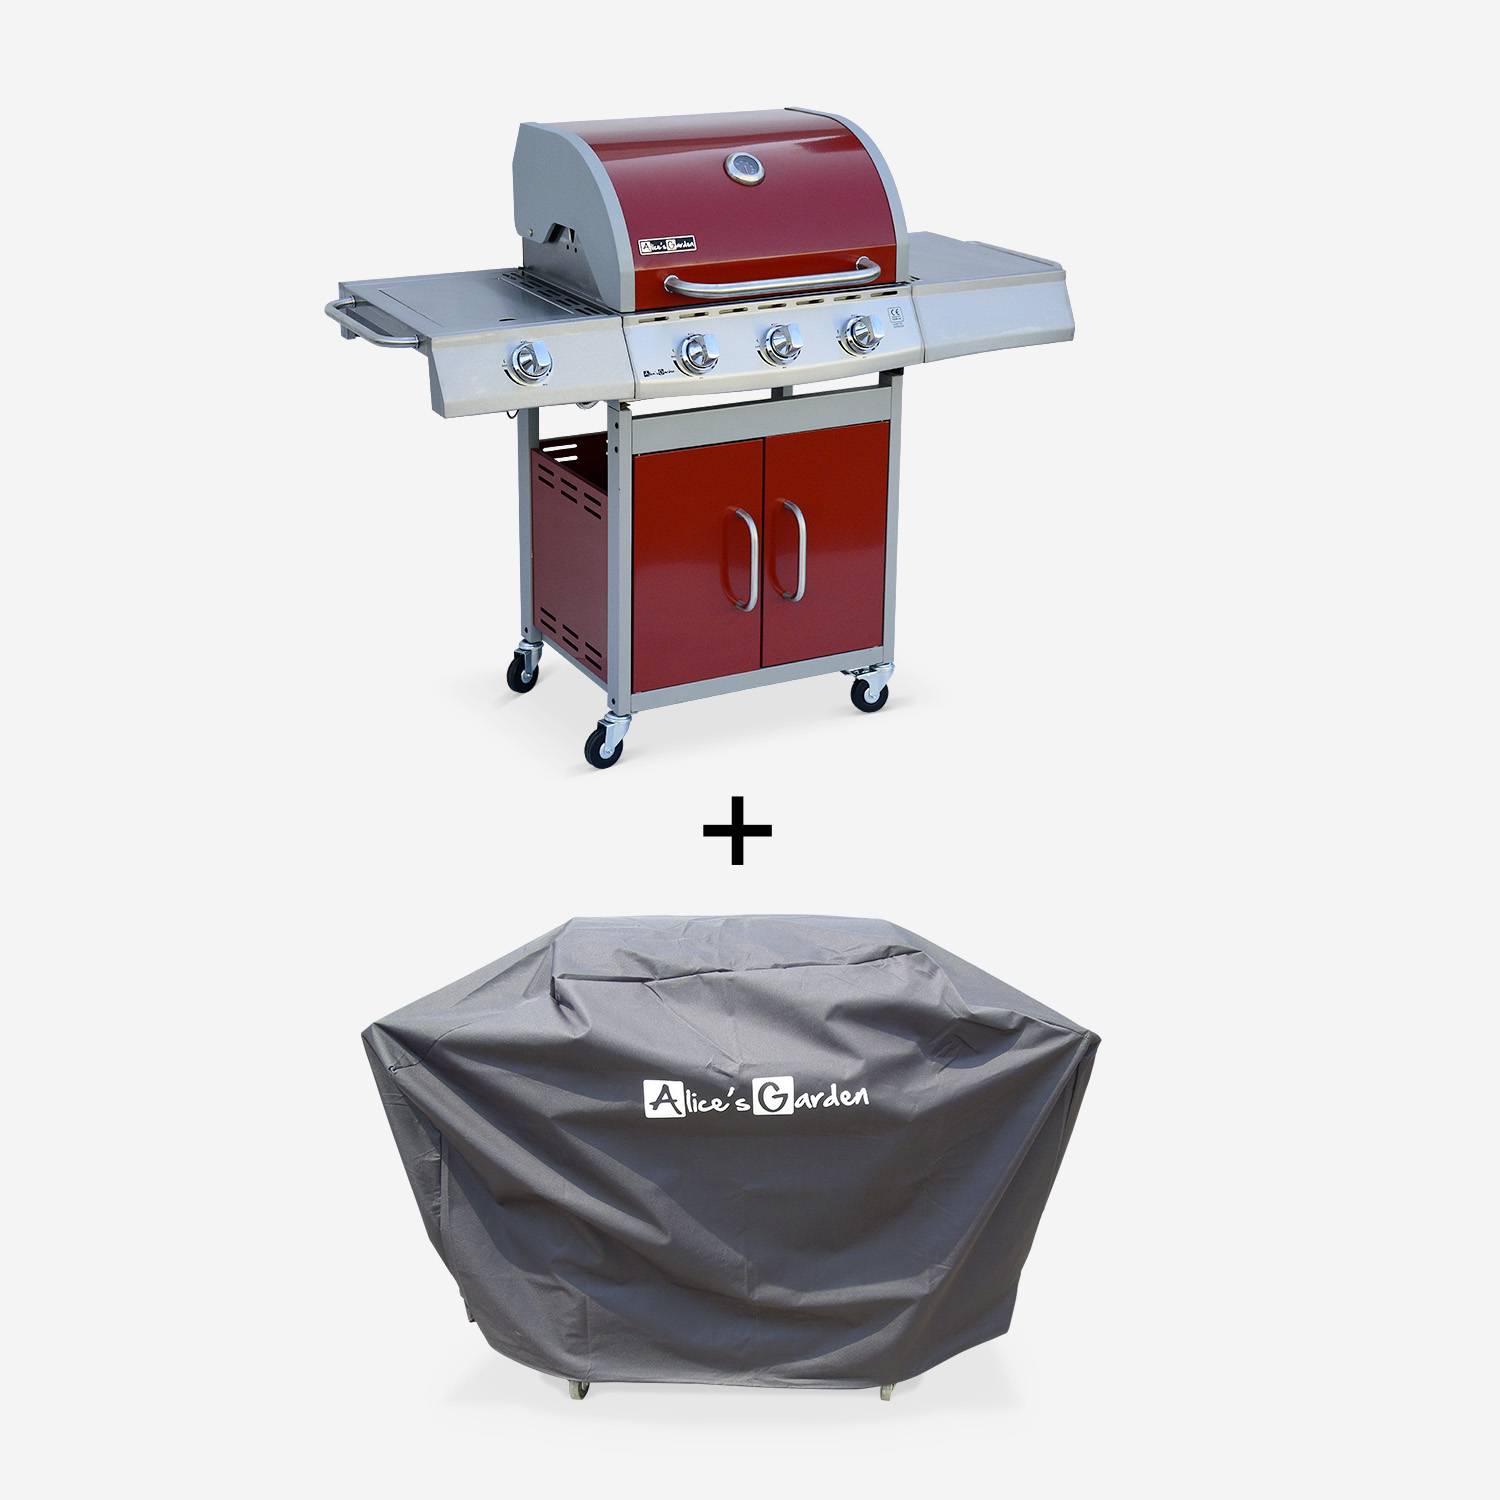 Barbecue gaz inox 14kW – Richelieu rouge – Barbecue 3 brûleurs + 1 feu latéral, côté grill et côté plancha, housse de protection incluse Photo1